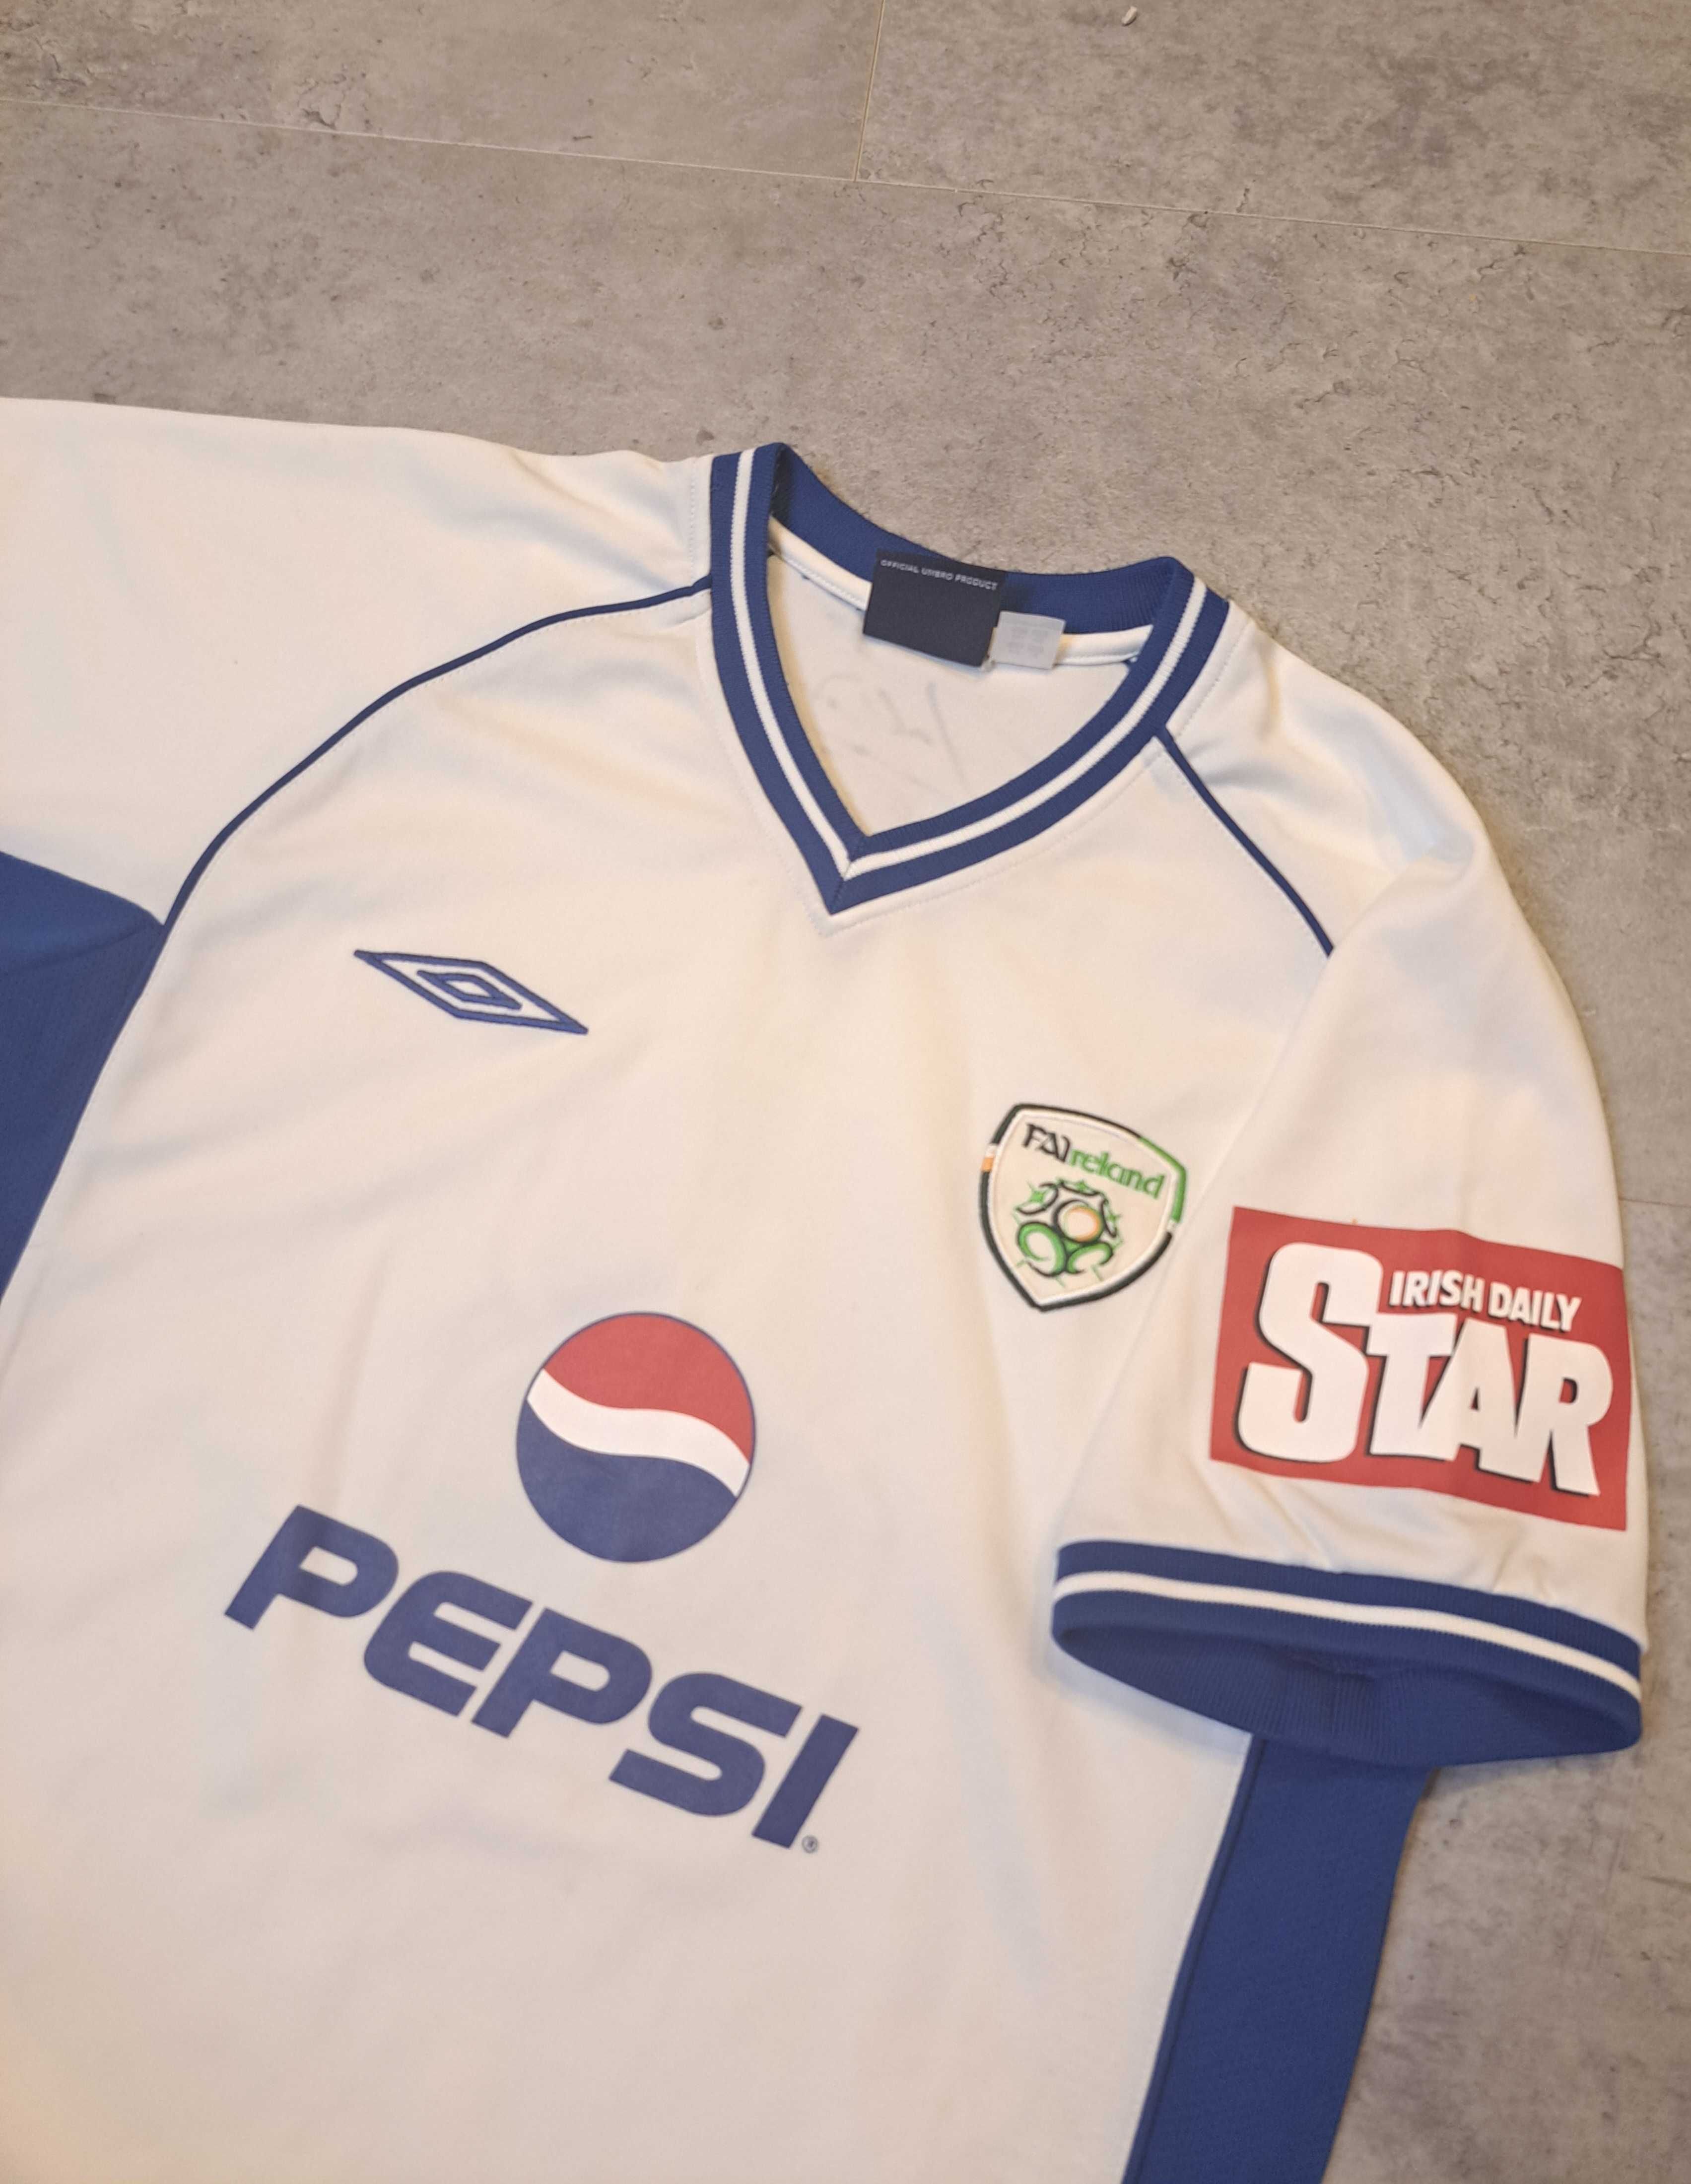 Koszulka Piłkarska Reprezentacja Irlandia FAI Umbro Pepsi Rooney